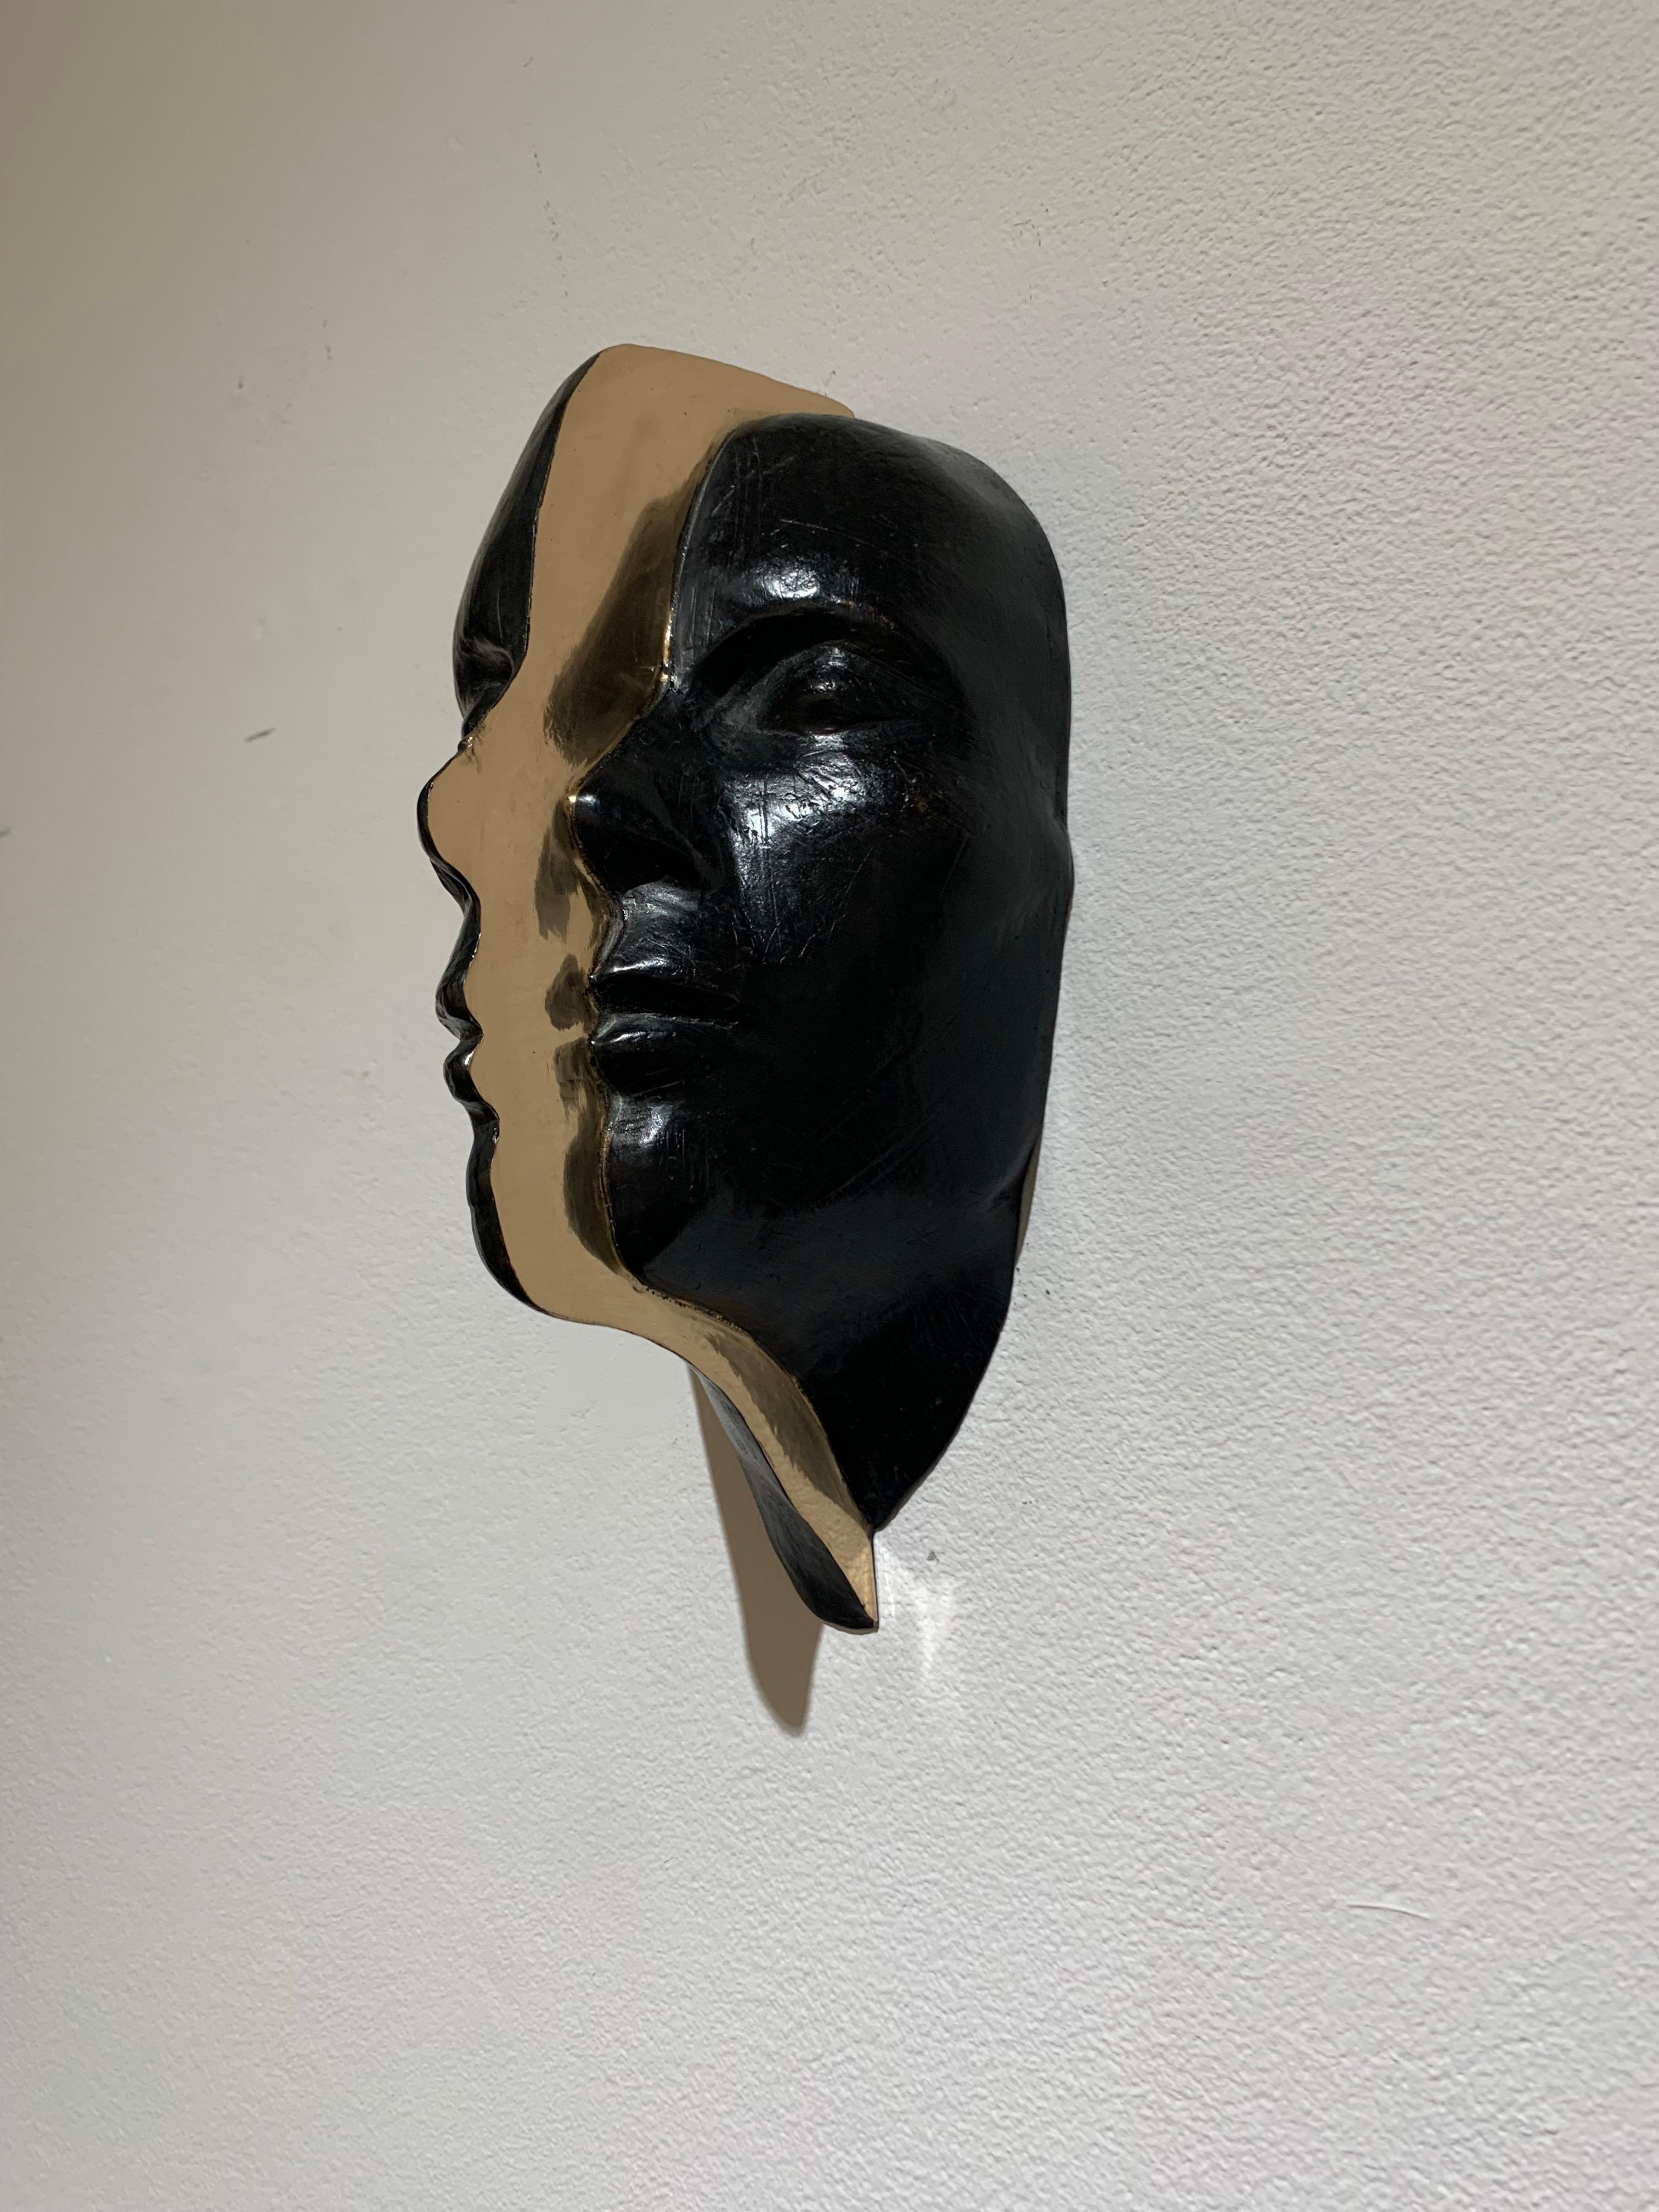 Departurer - Contemporary Sculpture by Johannes Nielsen